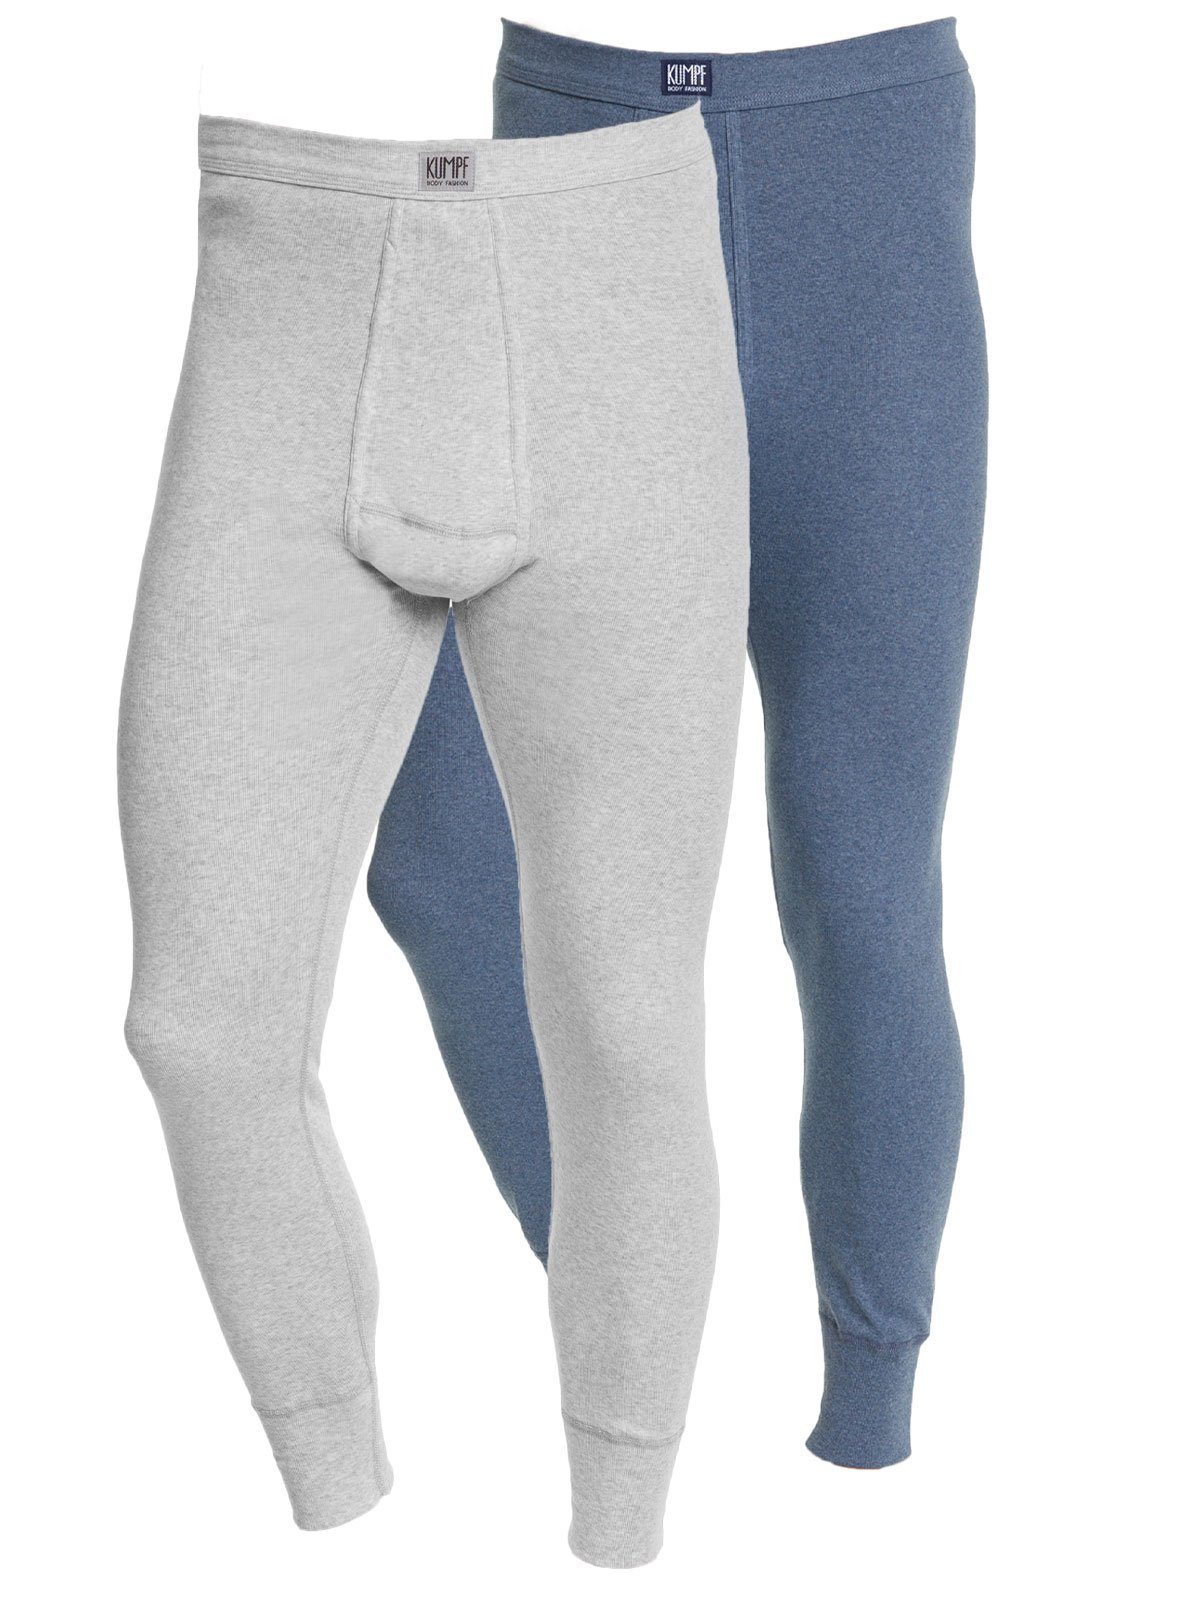 KUMPF Lange Unterhose 2er Sparpack Herren Unterhose Workerwear (Spar-Set, 2-St) mit eingriff blau-melange kiesel-melange